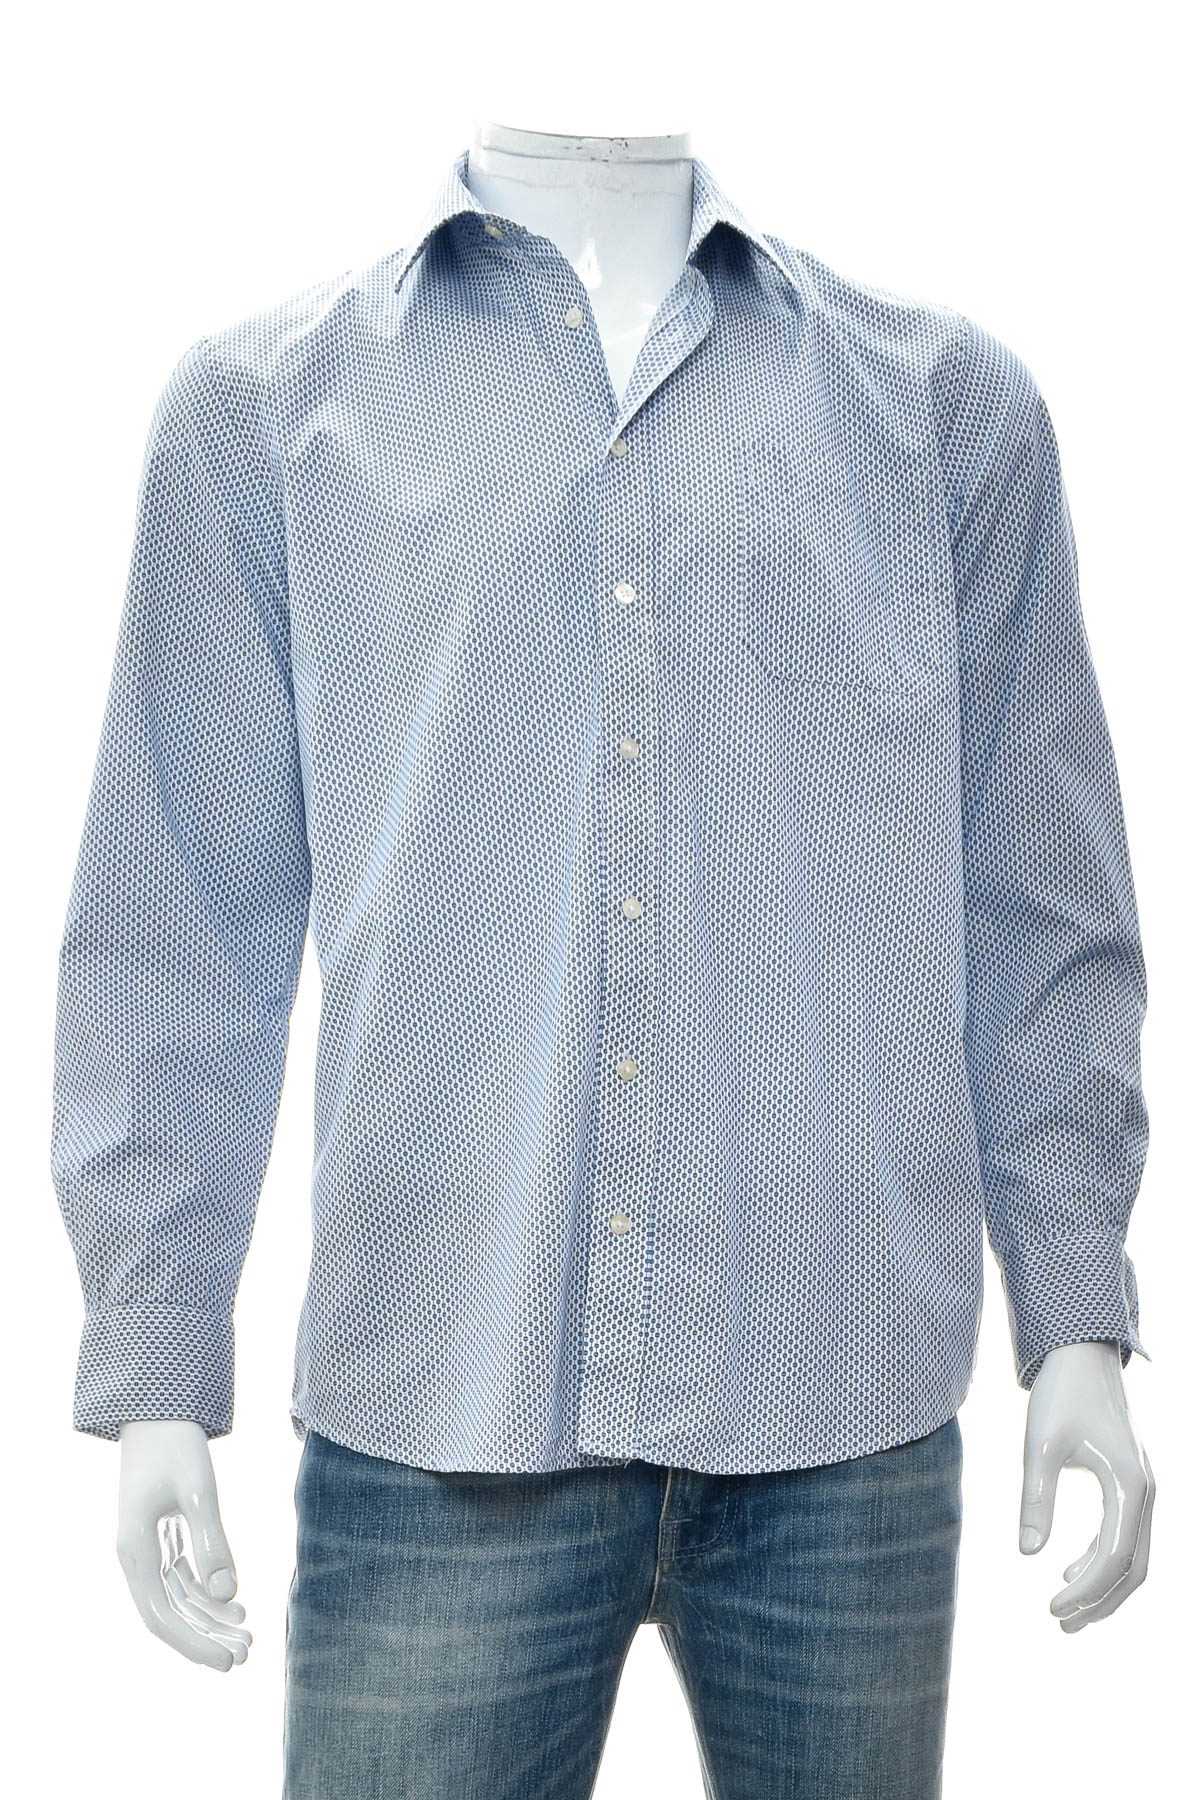 Ανδρικό πουκάμισο - CANDA - 0